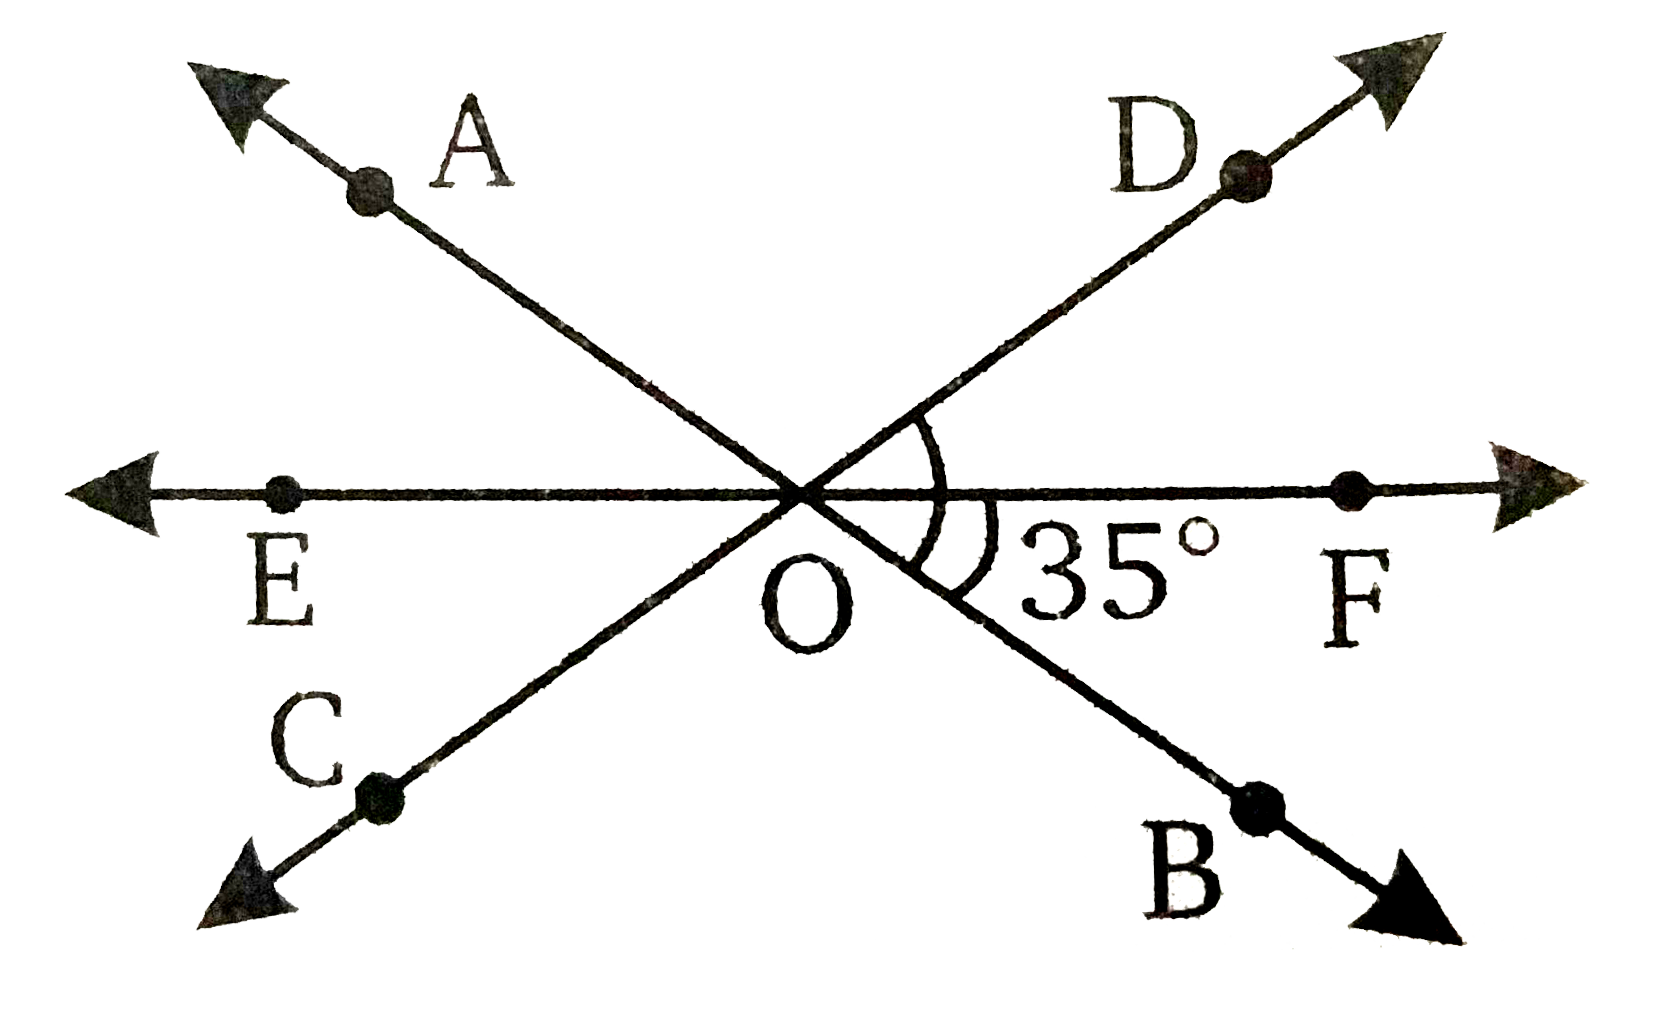 तीन संगामी रेखाएँ AB, CD और EF बिन्दु O से इस प्रकार गुजरती हैं कि OF, angleBOD का समअर्द्धक है यदि angleBOF=35^(@), तो angleBOC और angleAOD ज्ञात कीजिए |